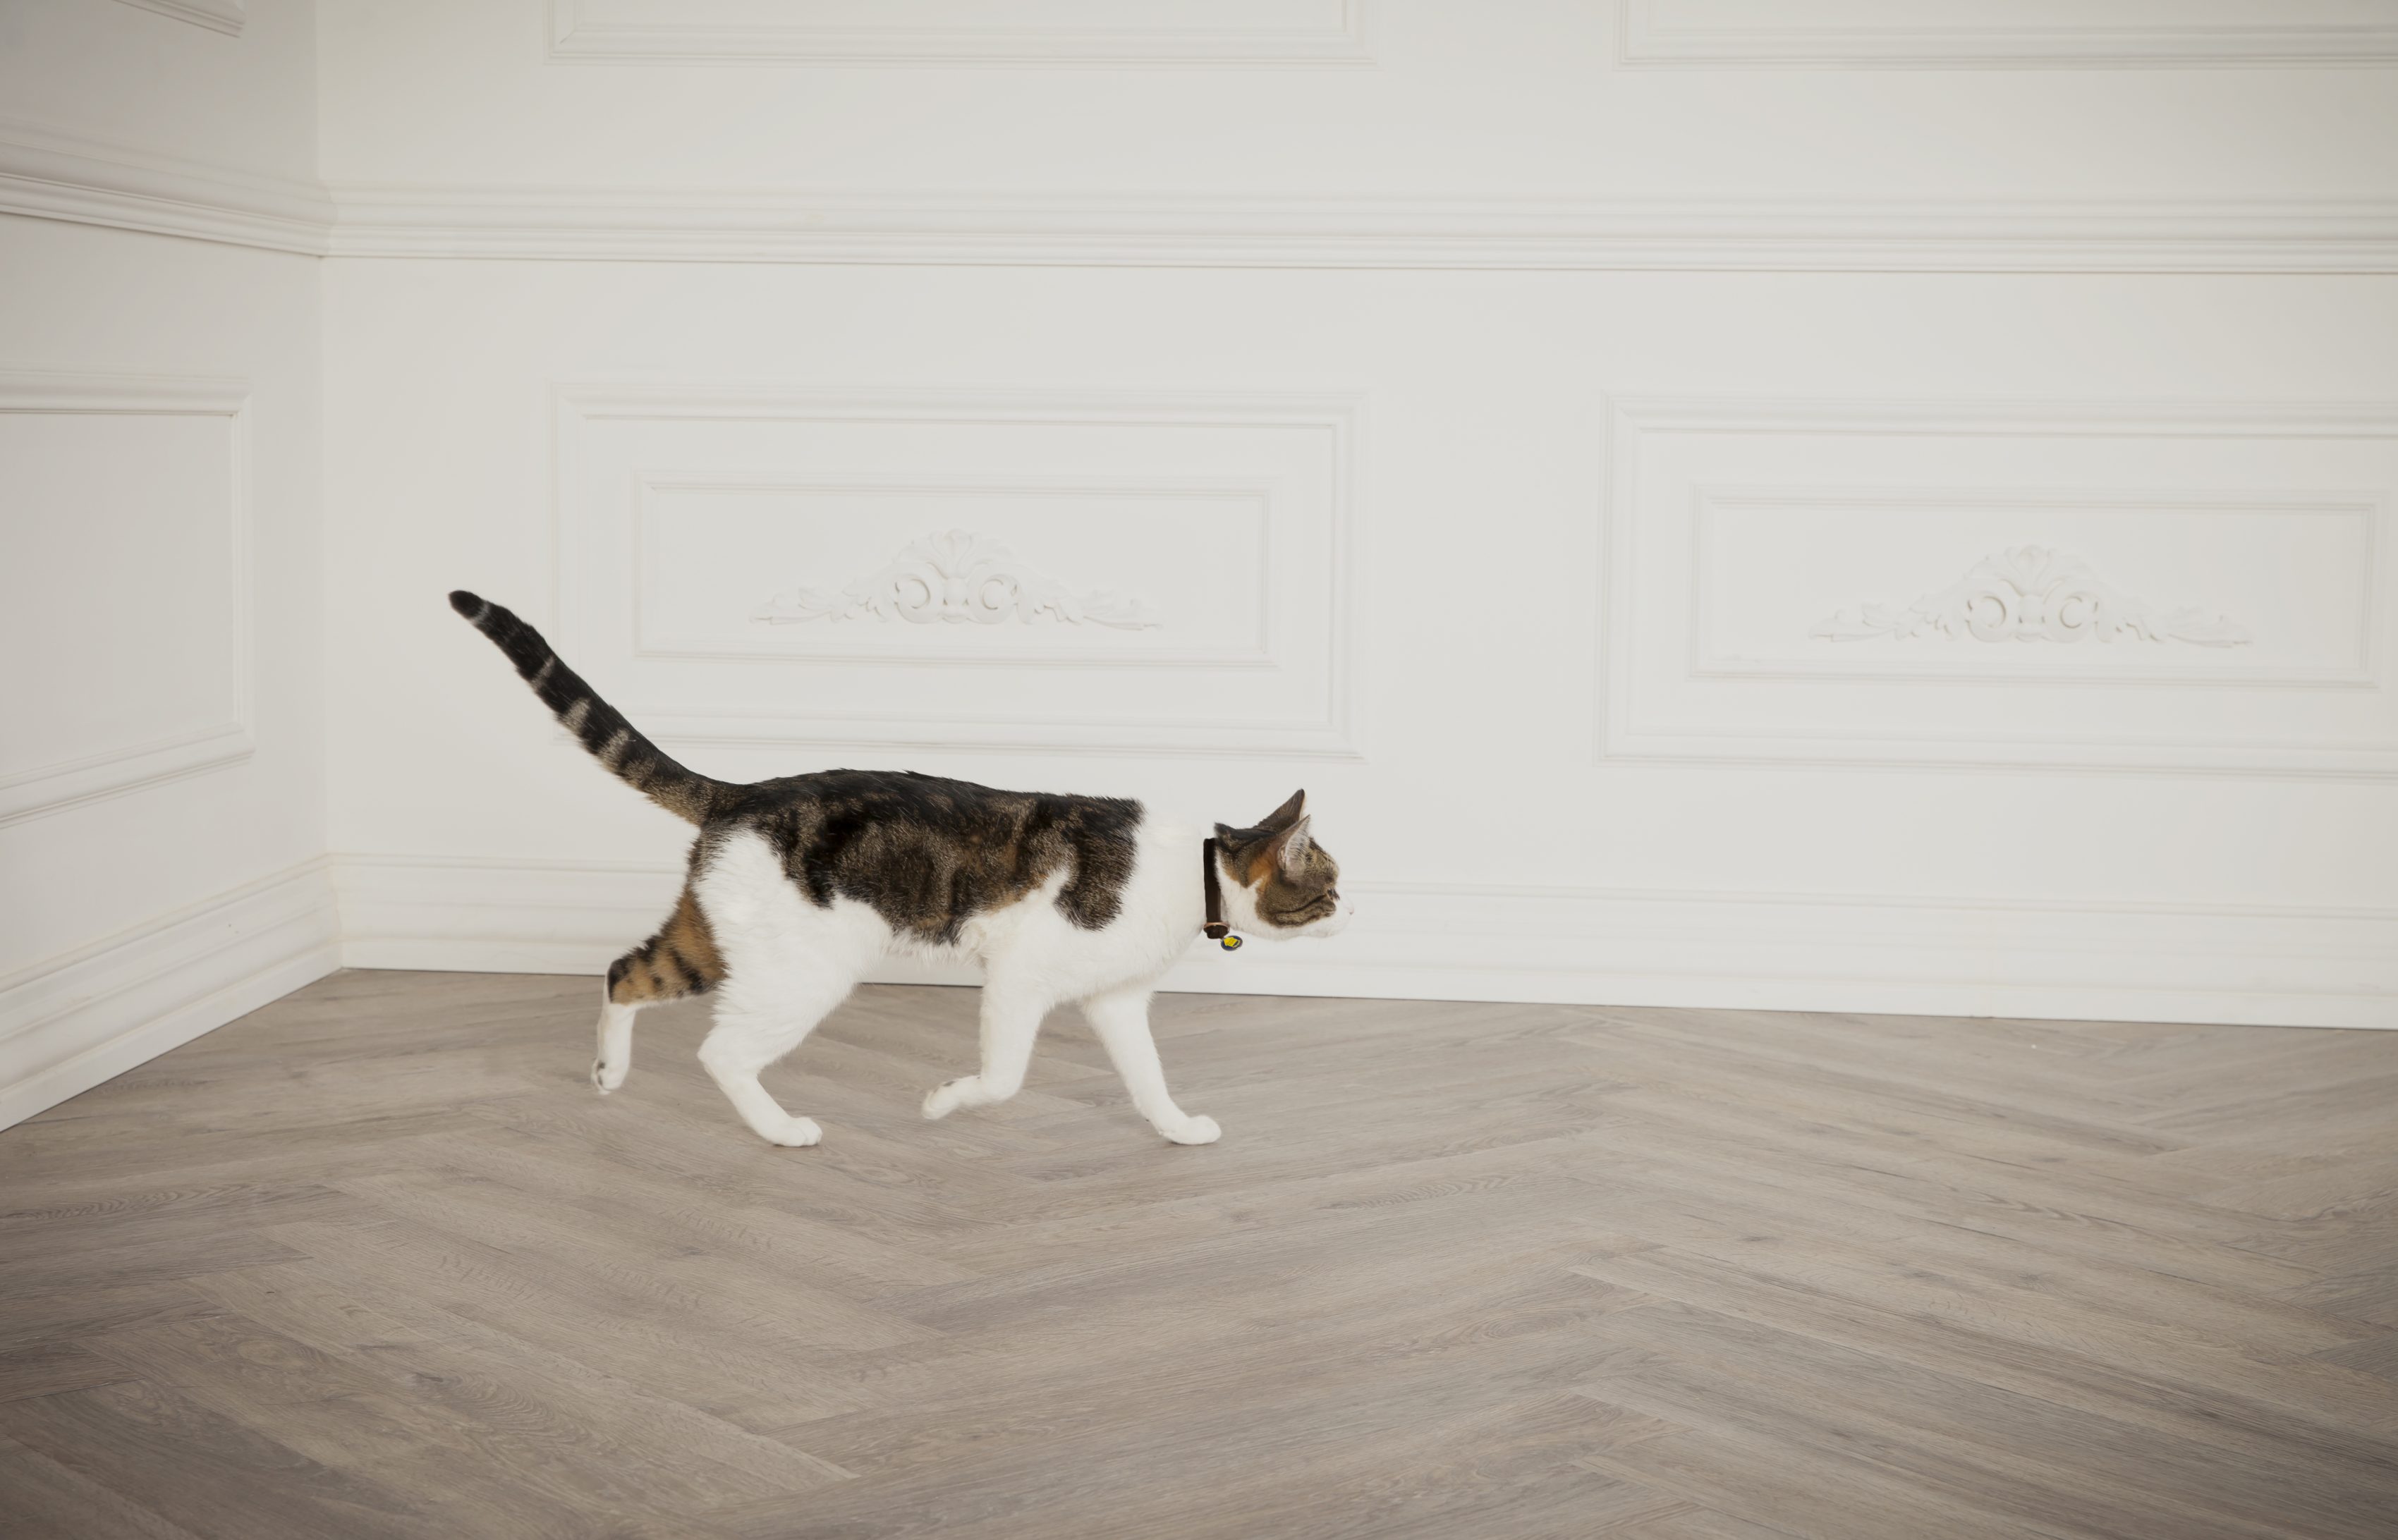 Cat walking inside white room.